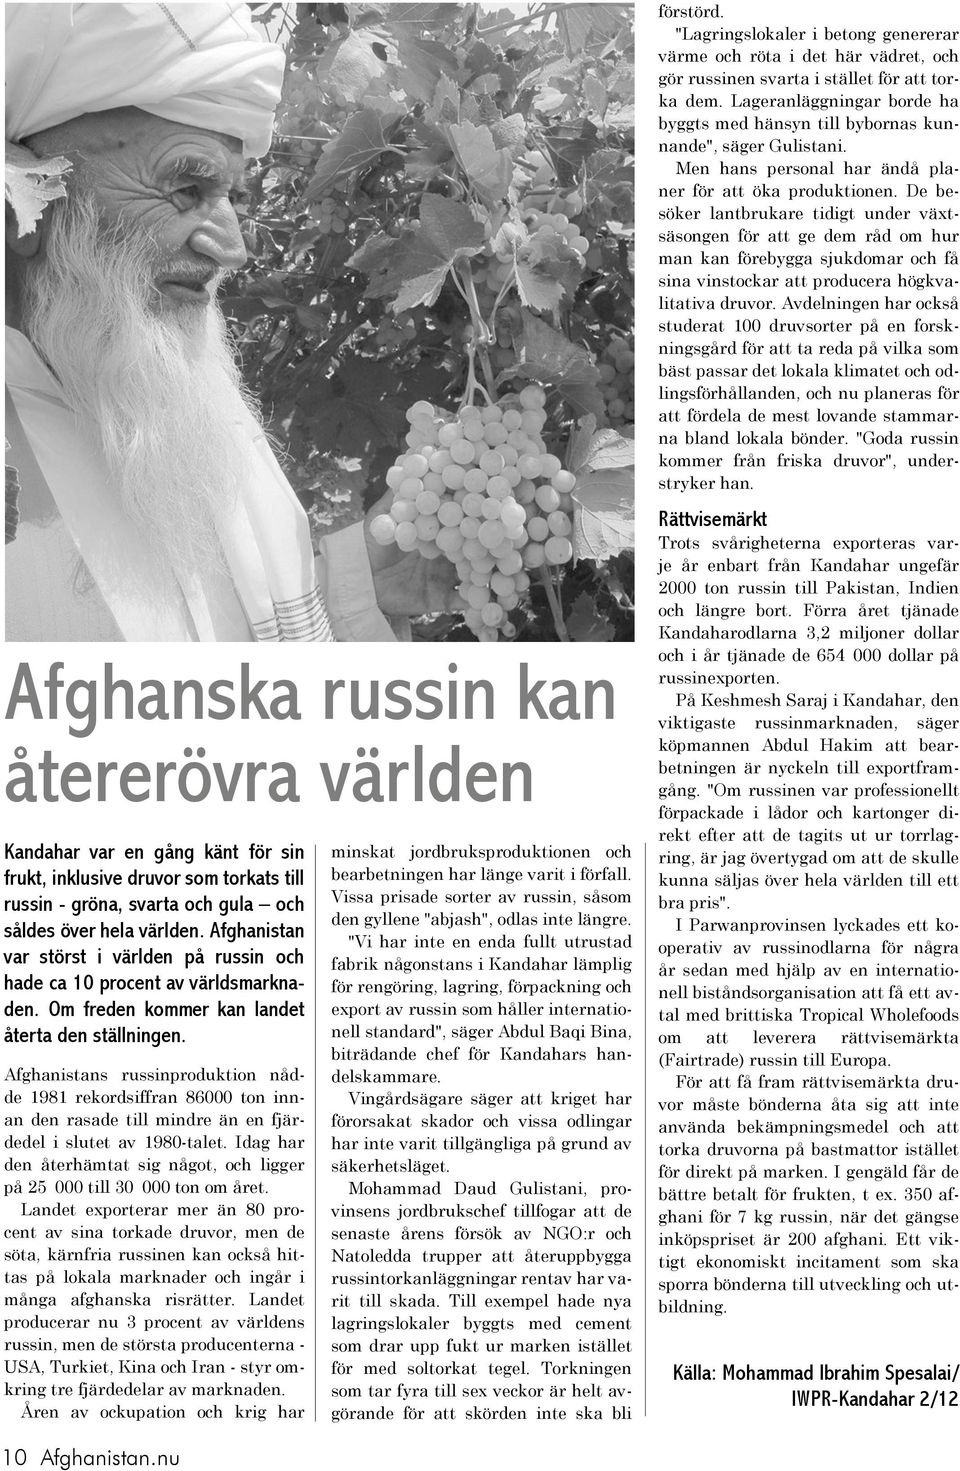 Afghanistans russinproduktion nådde 1981 rekordsiffran 86000 ton innan den rasade till mindre än en fjärdedel i slutet av 1980-talet.